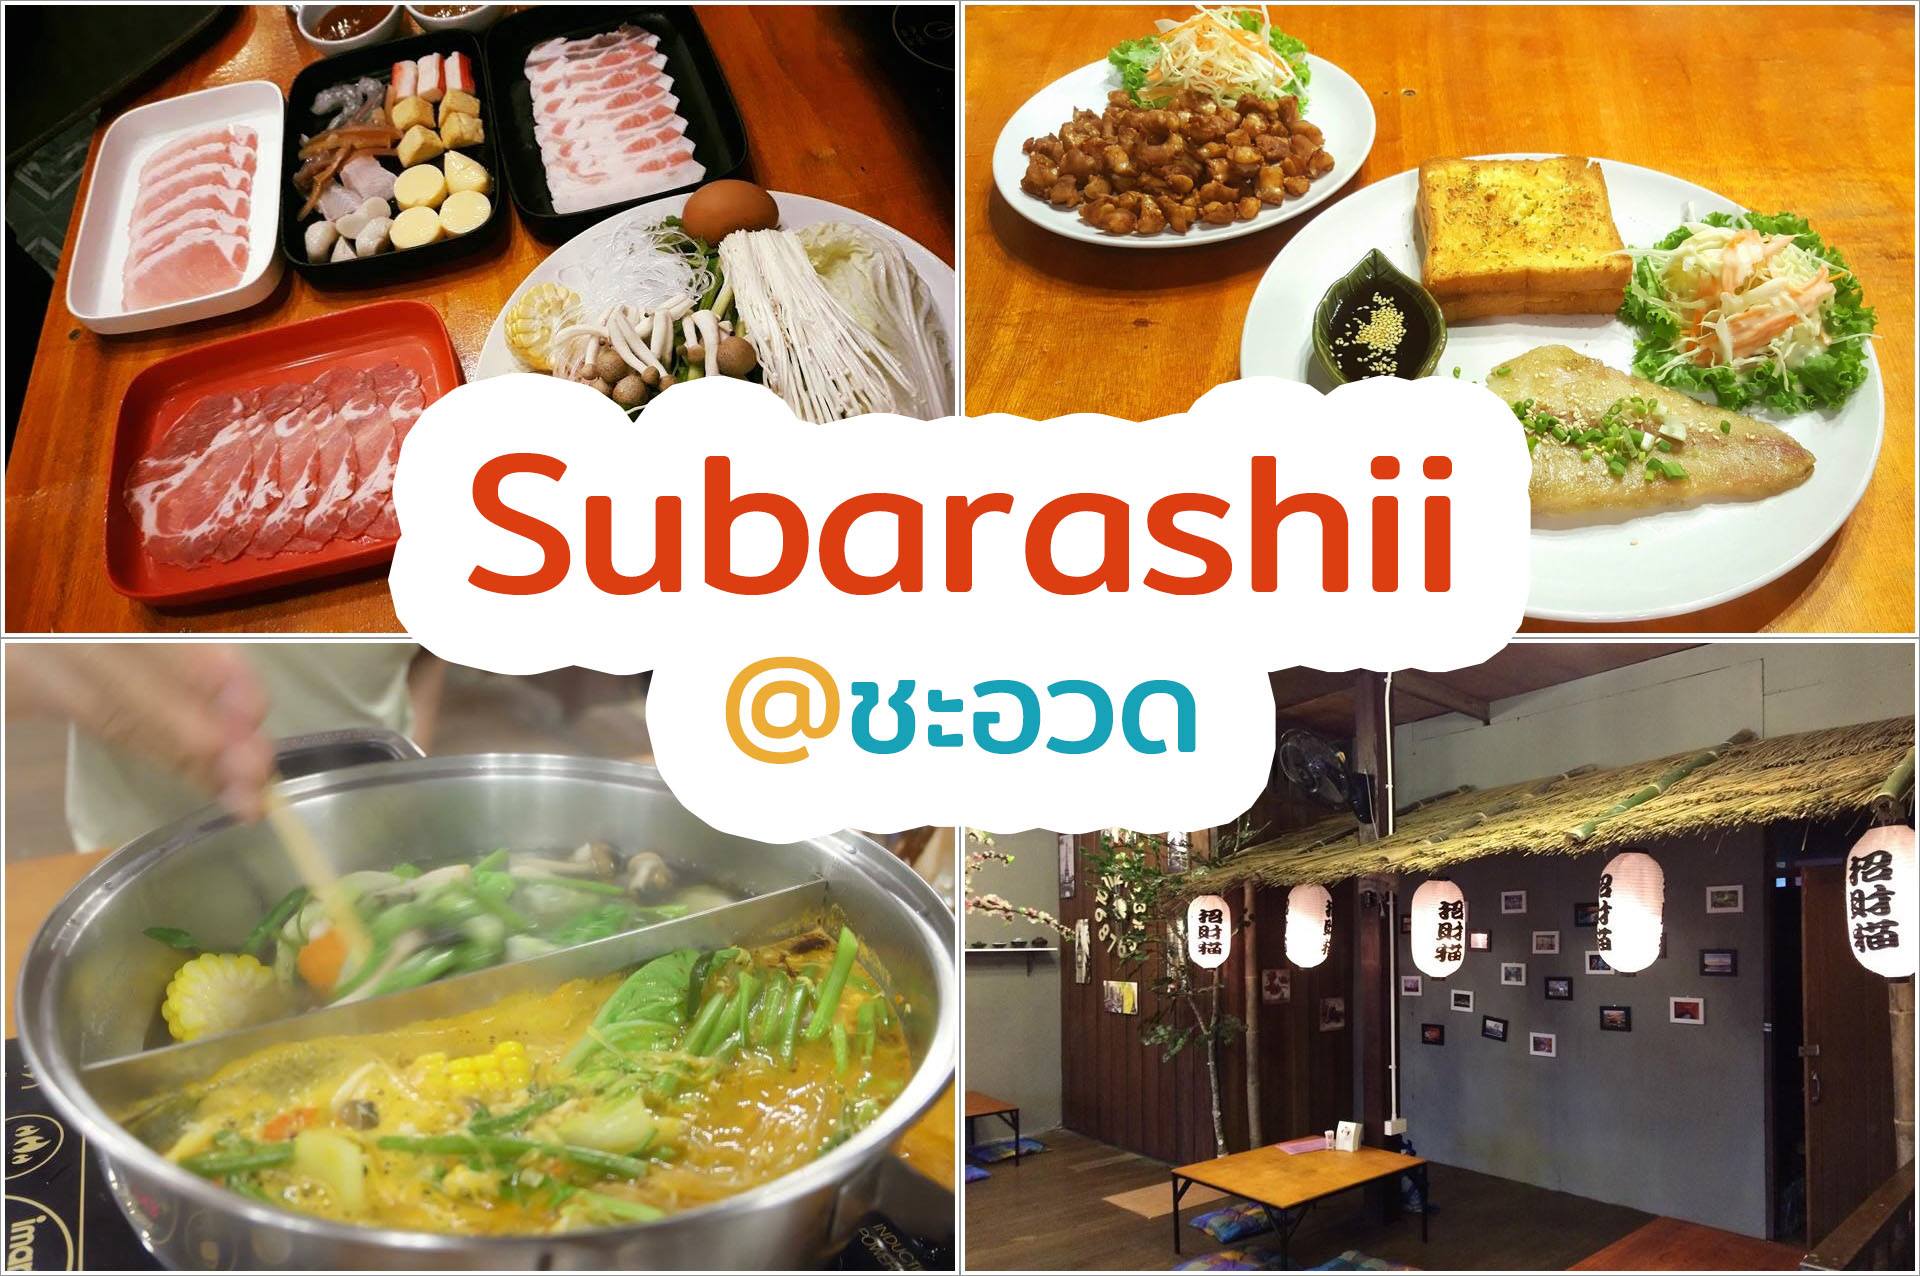  11.-Subarashii-ชะอวด
ร้านนี้เพิ่งเปิดใหม่ได้ไม่นานครับ-มีอาหารหลายประเภทไม่ว่าจะเป็นชาบู-อาหารจานเดียว-เสต็ก-ของหวานก็มีครับ-ลองไปชิมกันดูนะครับผม
https://nakhonsidee.com/show/read/1/48 จุดกิน,นครศรีธรรมราช,ของกิน,ทีเด็ด,อร่อย,ร้านอาหาร,ร้านอร่อย